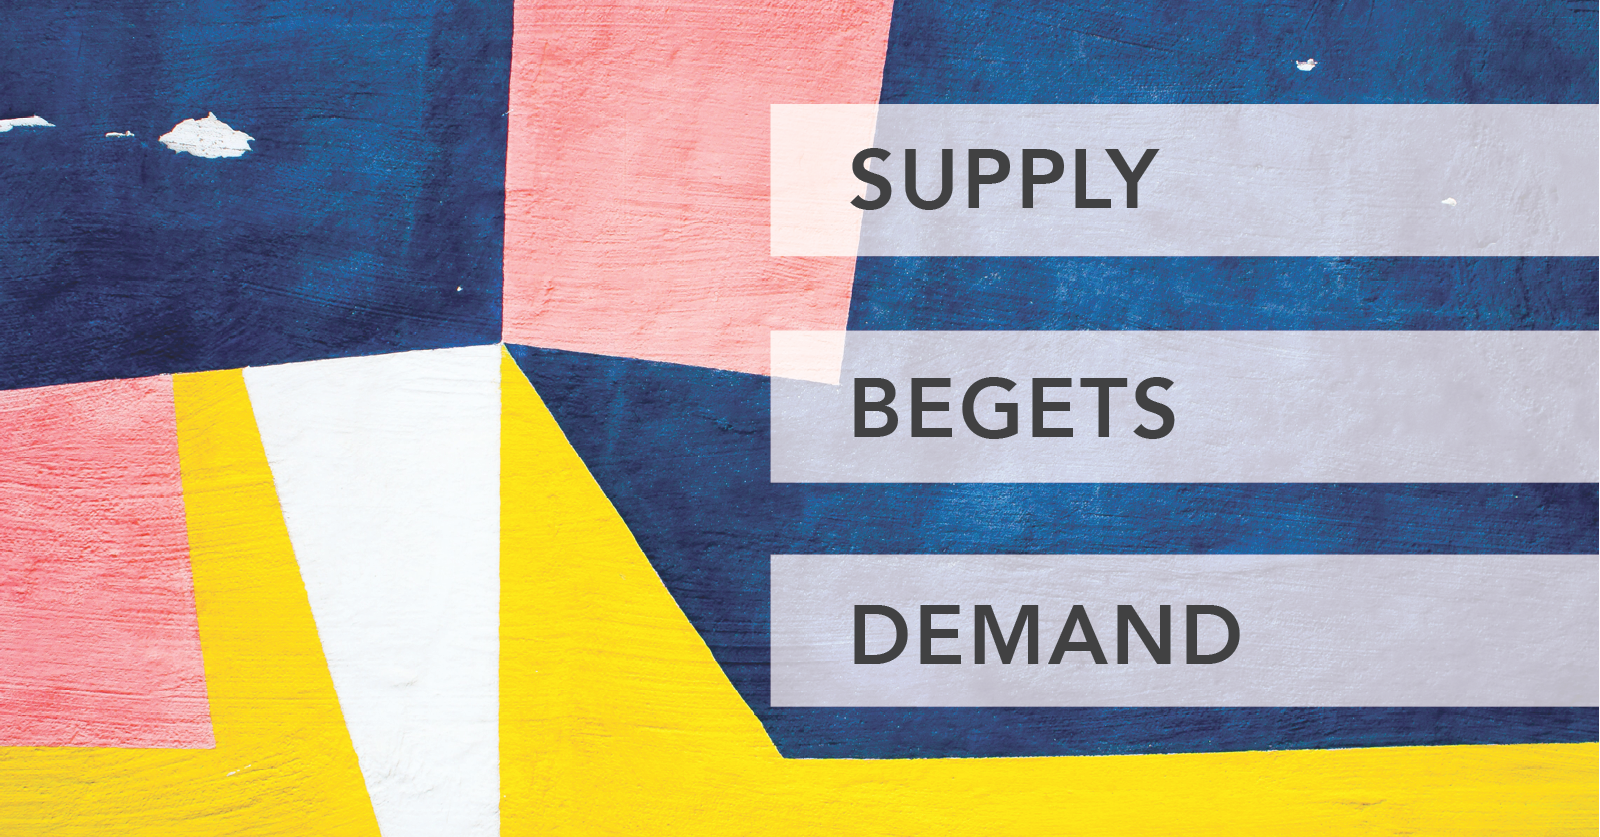 Supply begets demand